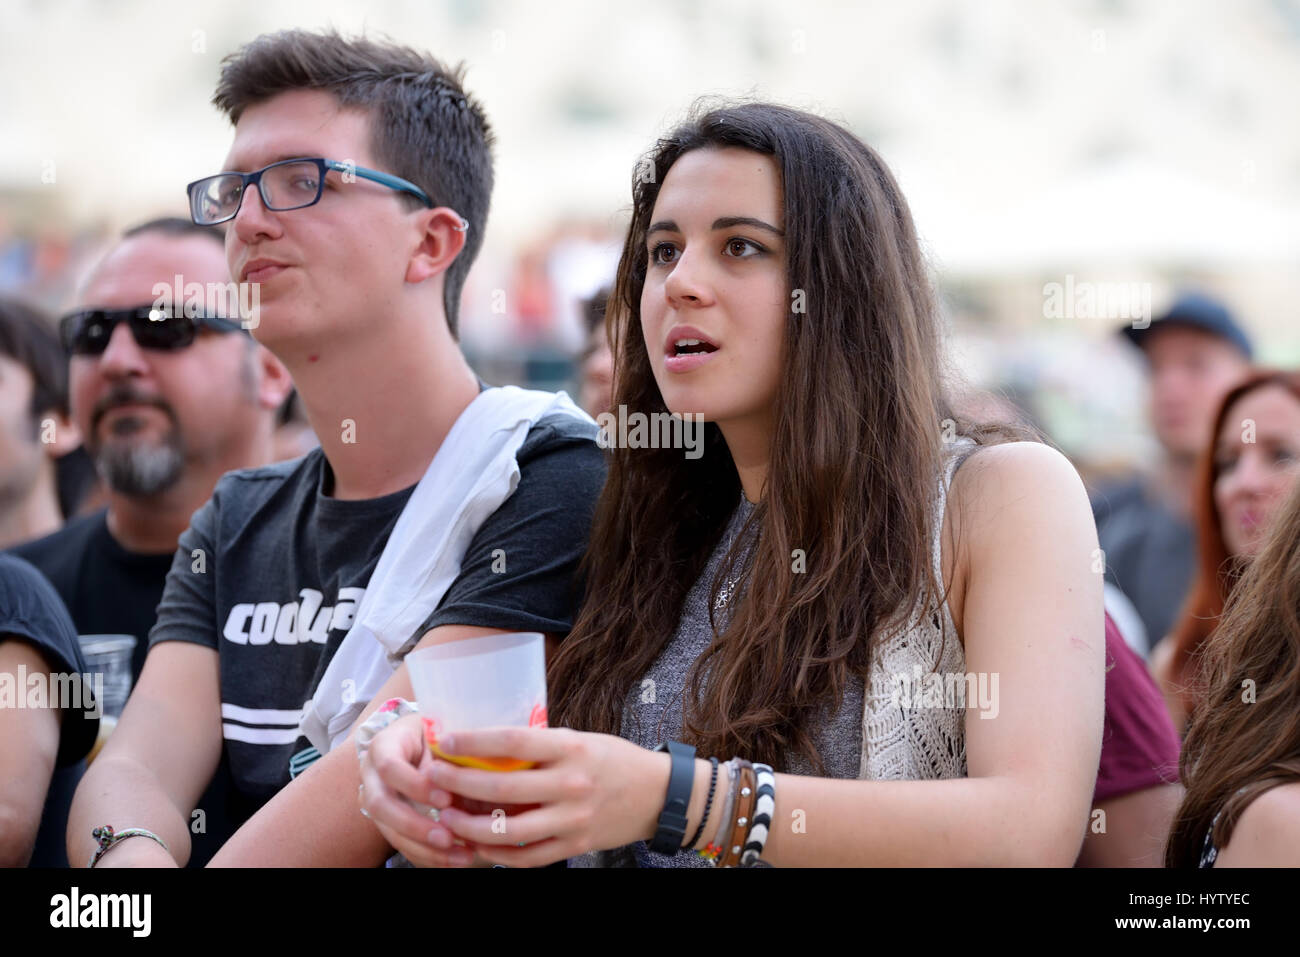 VALENCIA, SPAIN - JUN 10: The crowd at Festival de les Arts on June 10, 2016 in Valencia, Spain. Stock Photo